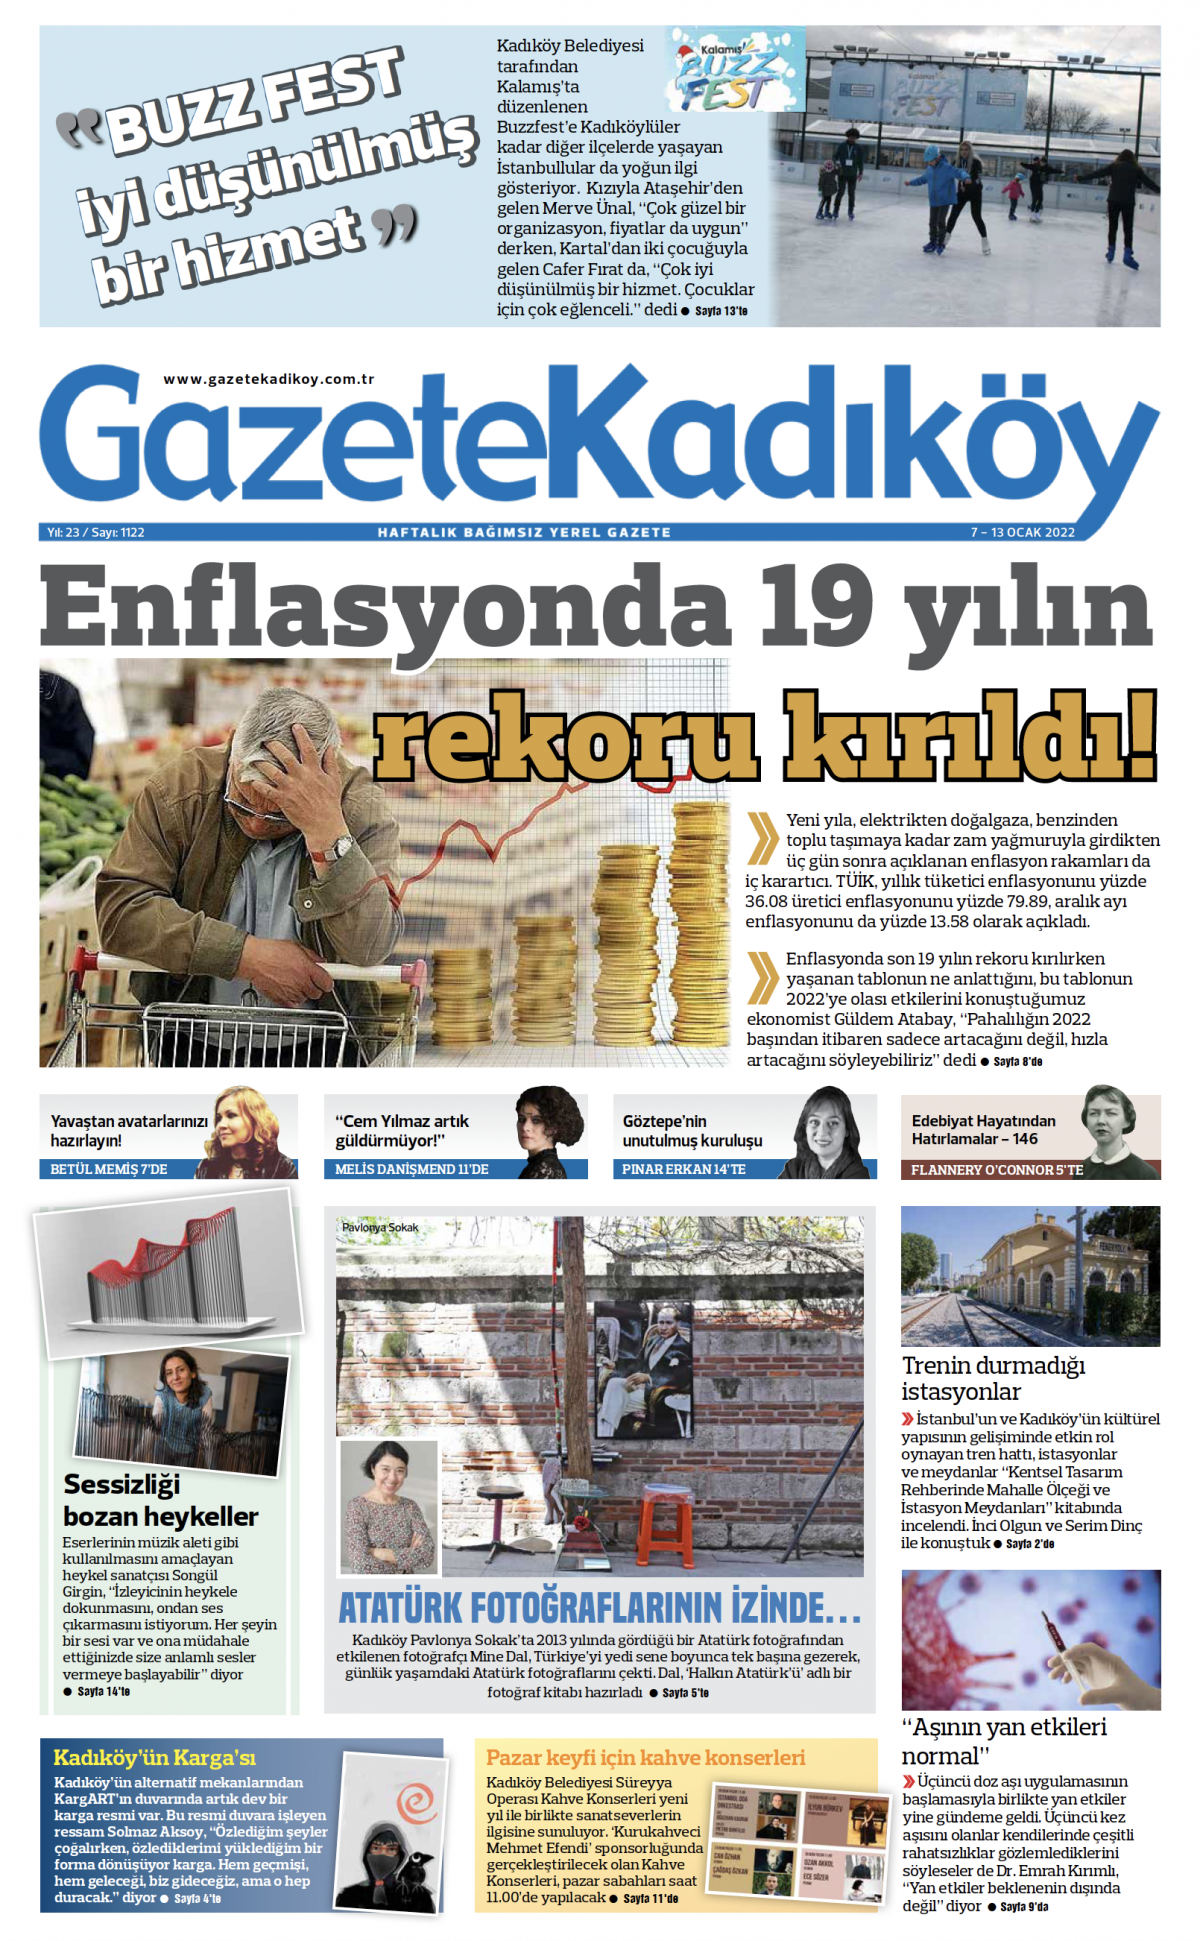 Gazete Kadıköy - 1122. sayı